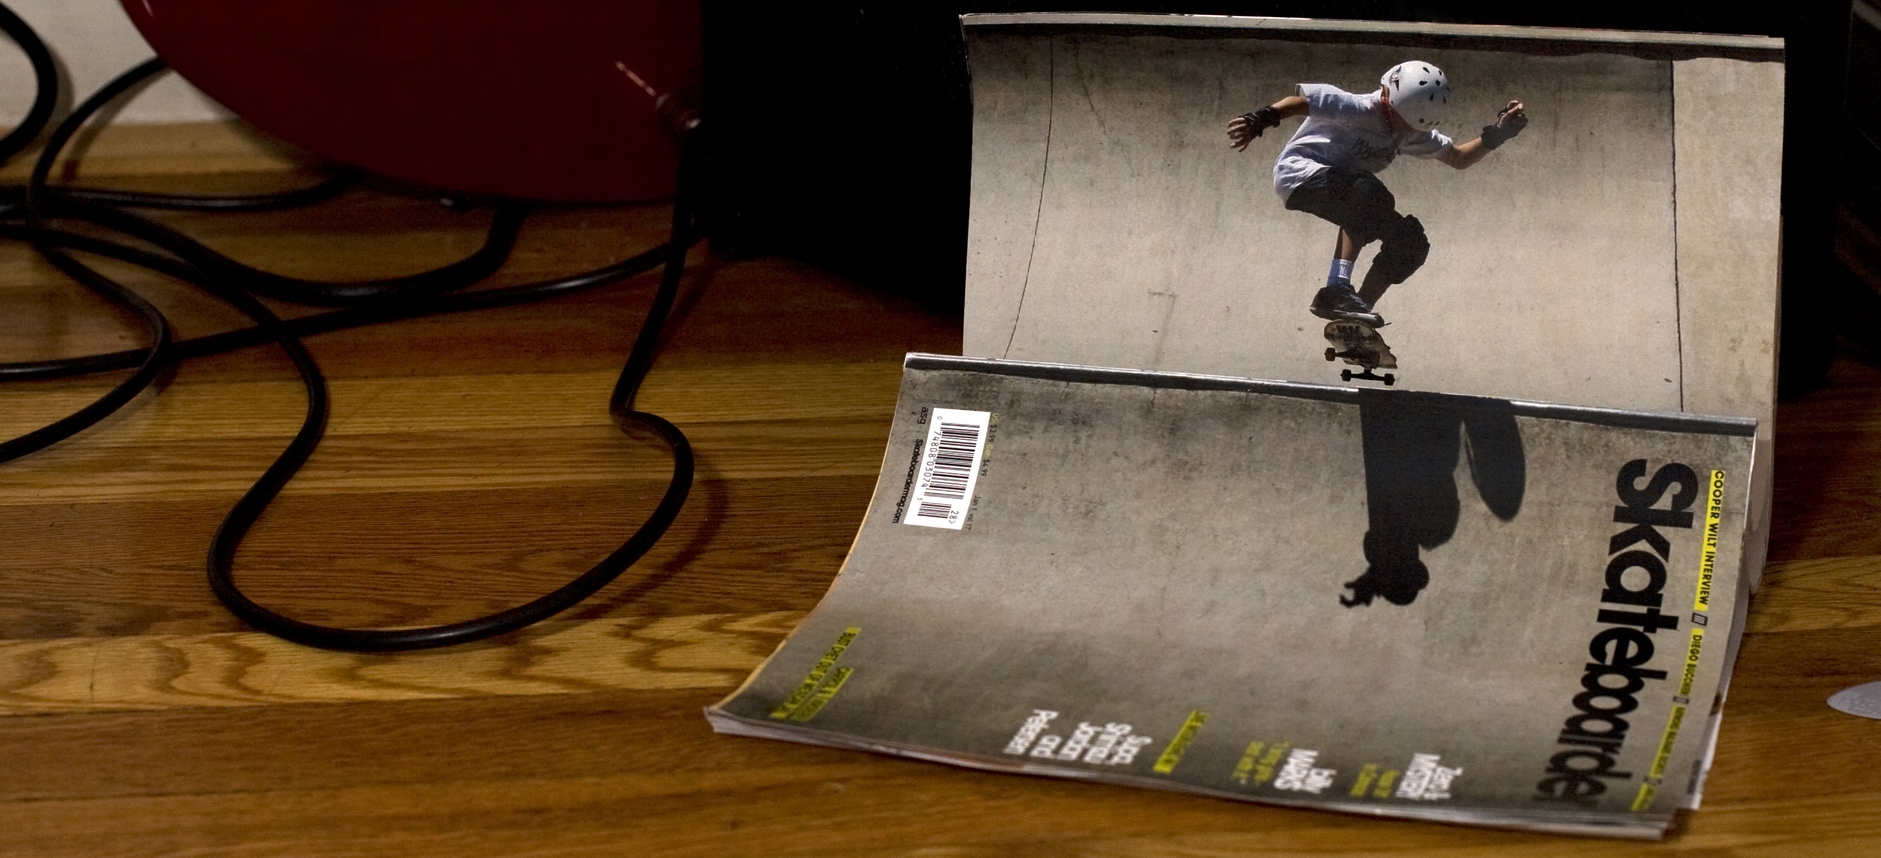 SKATEBOARDER MAGAZINE&lt;strong&gt;ART DIRECTION, PHOTOGRAPHY&lt;/strong&gt;&lt;a href="/skateboarder-magazine"&gt;More&lt;/a&gt;